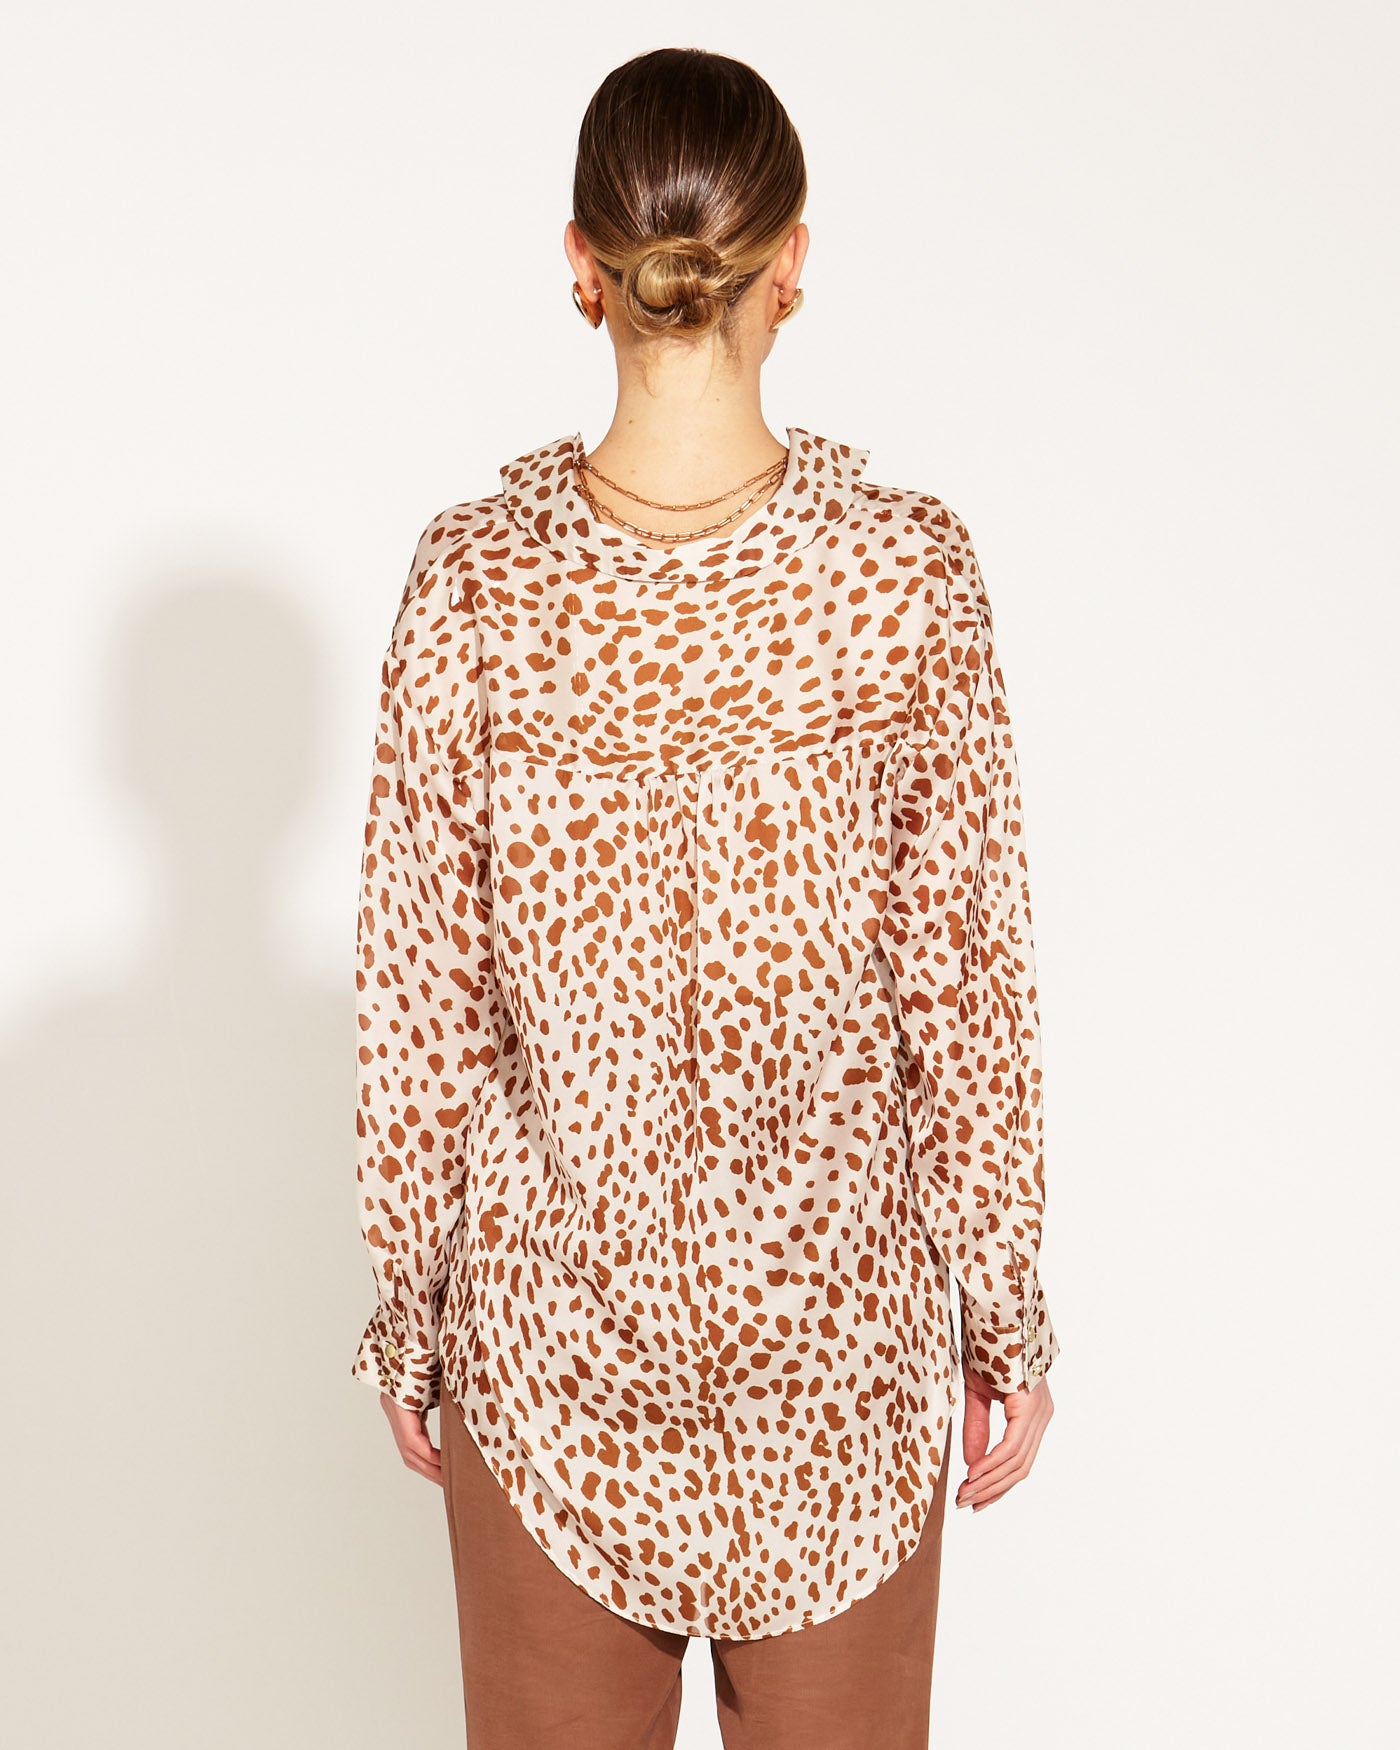 Fate+Becker True To Life Collared Shirt - Giraffe Print